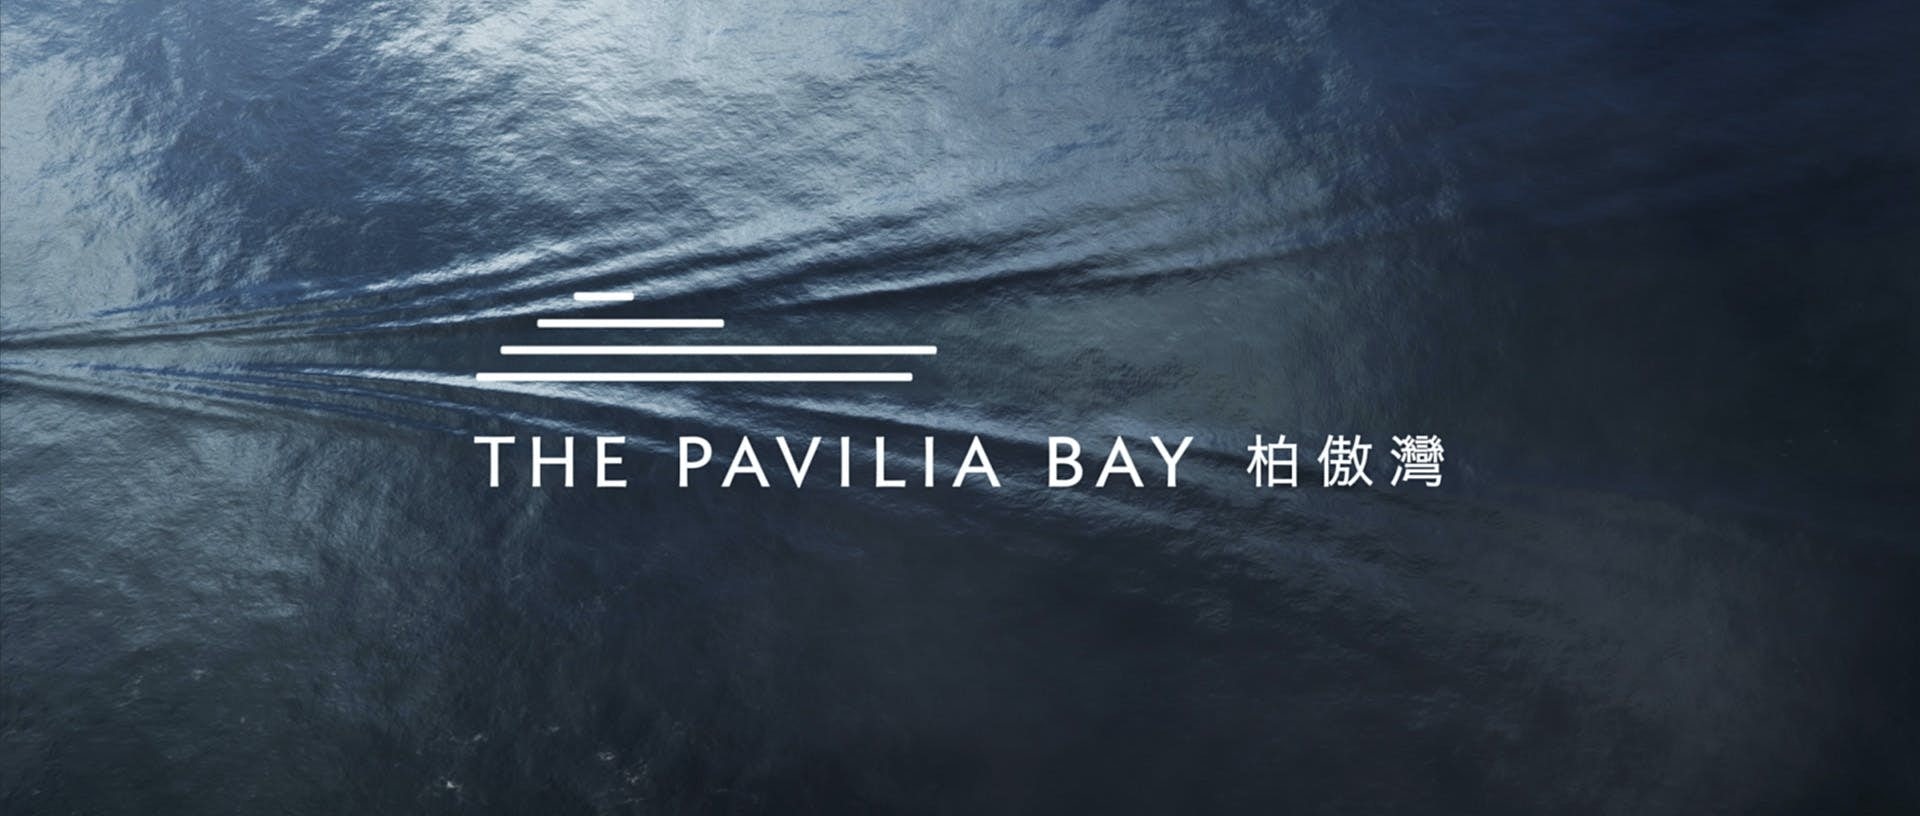 Ovanifrån av havet med vatten krusningar. Pavilia bay-logotypen synlig på toppen.